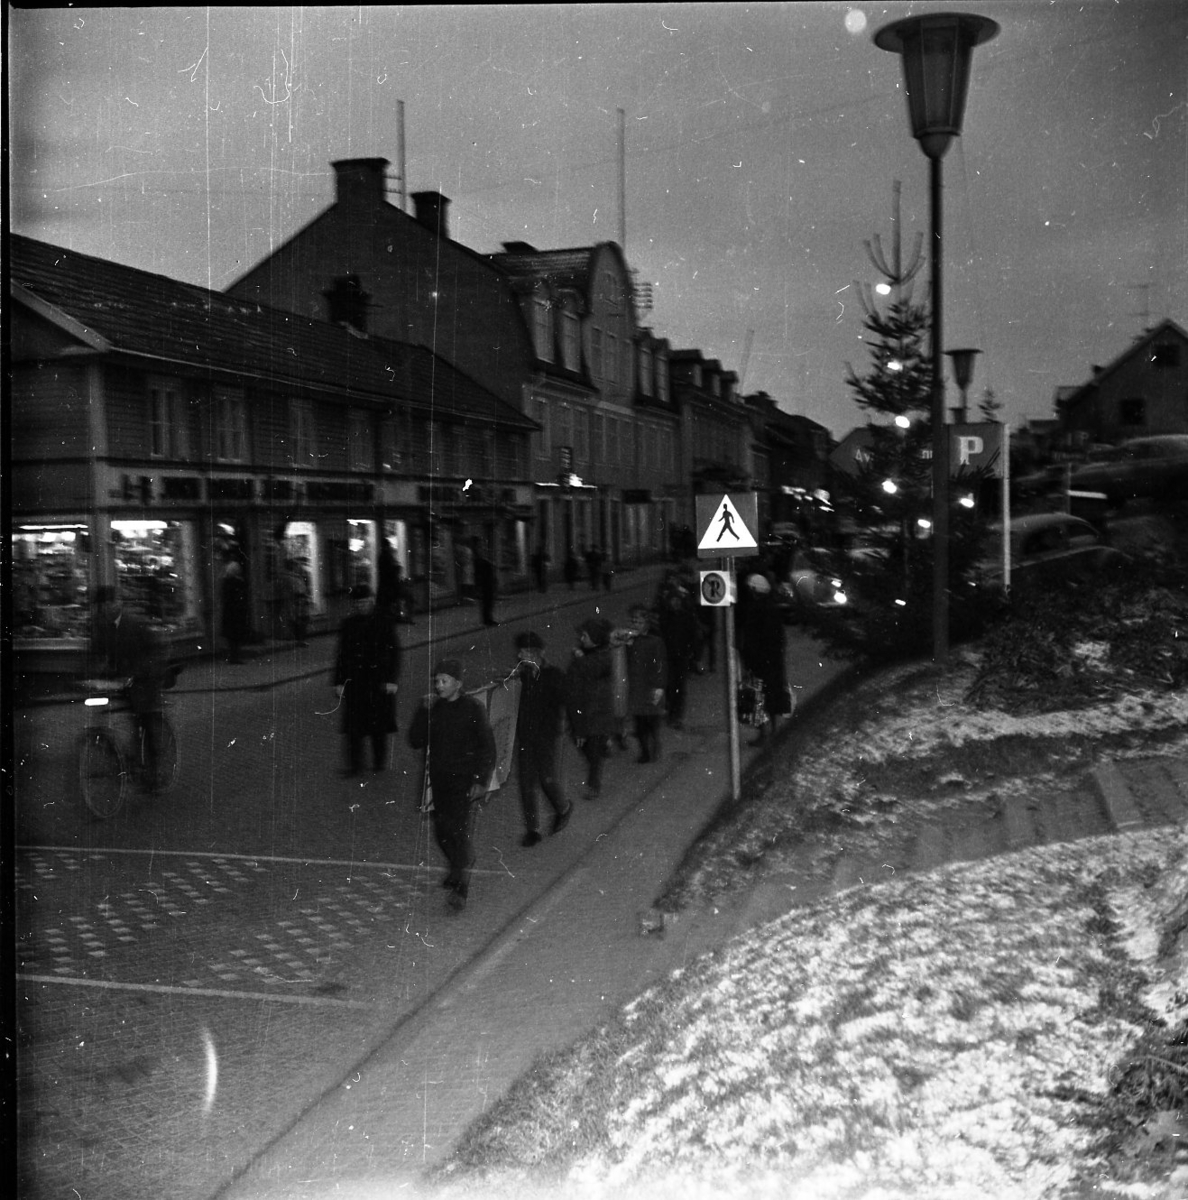 Ungdomar går i mörkret på Brahegatan. Tända julgranar på torgmuren till höger. Det ligger lite snö på marken.